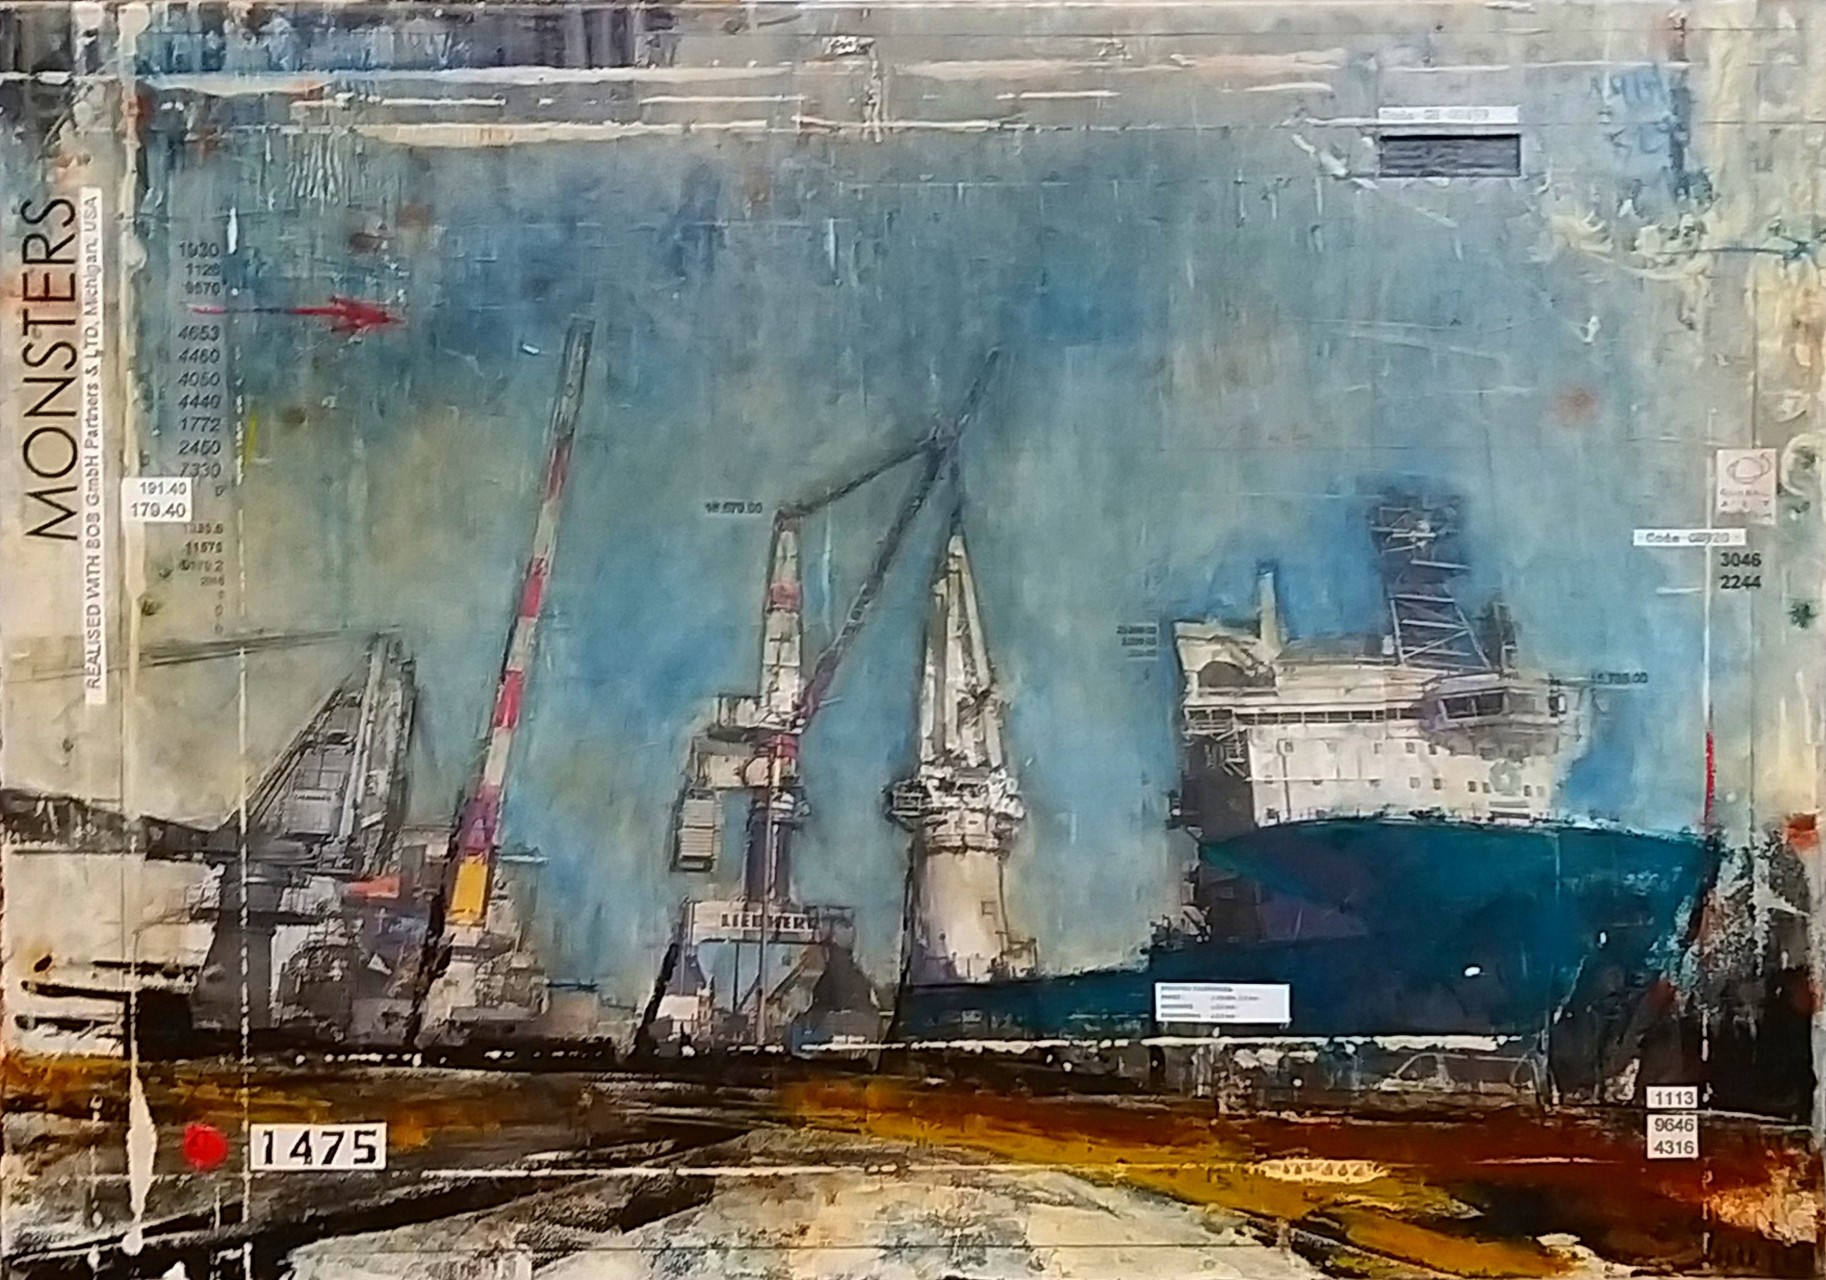 Monsters - port de Rostock (D) - collage photo, huile, acrylique sur toile - 70 x 100 cm - 2020